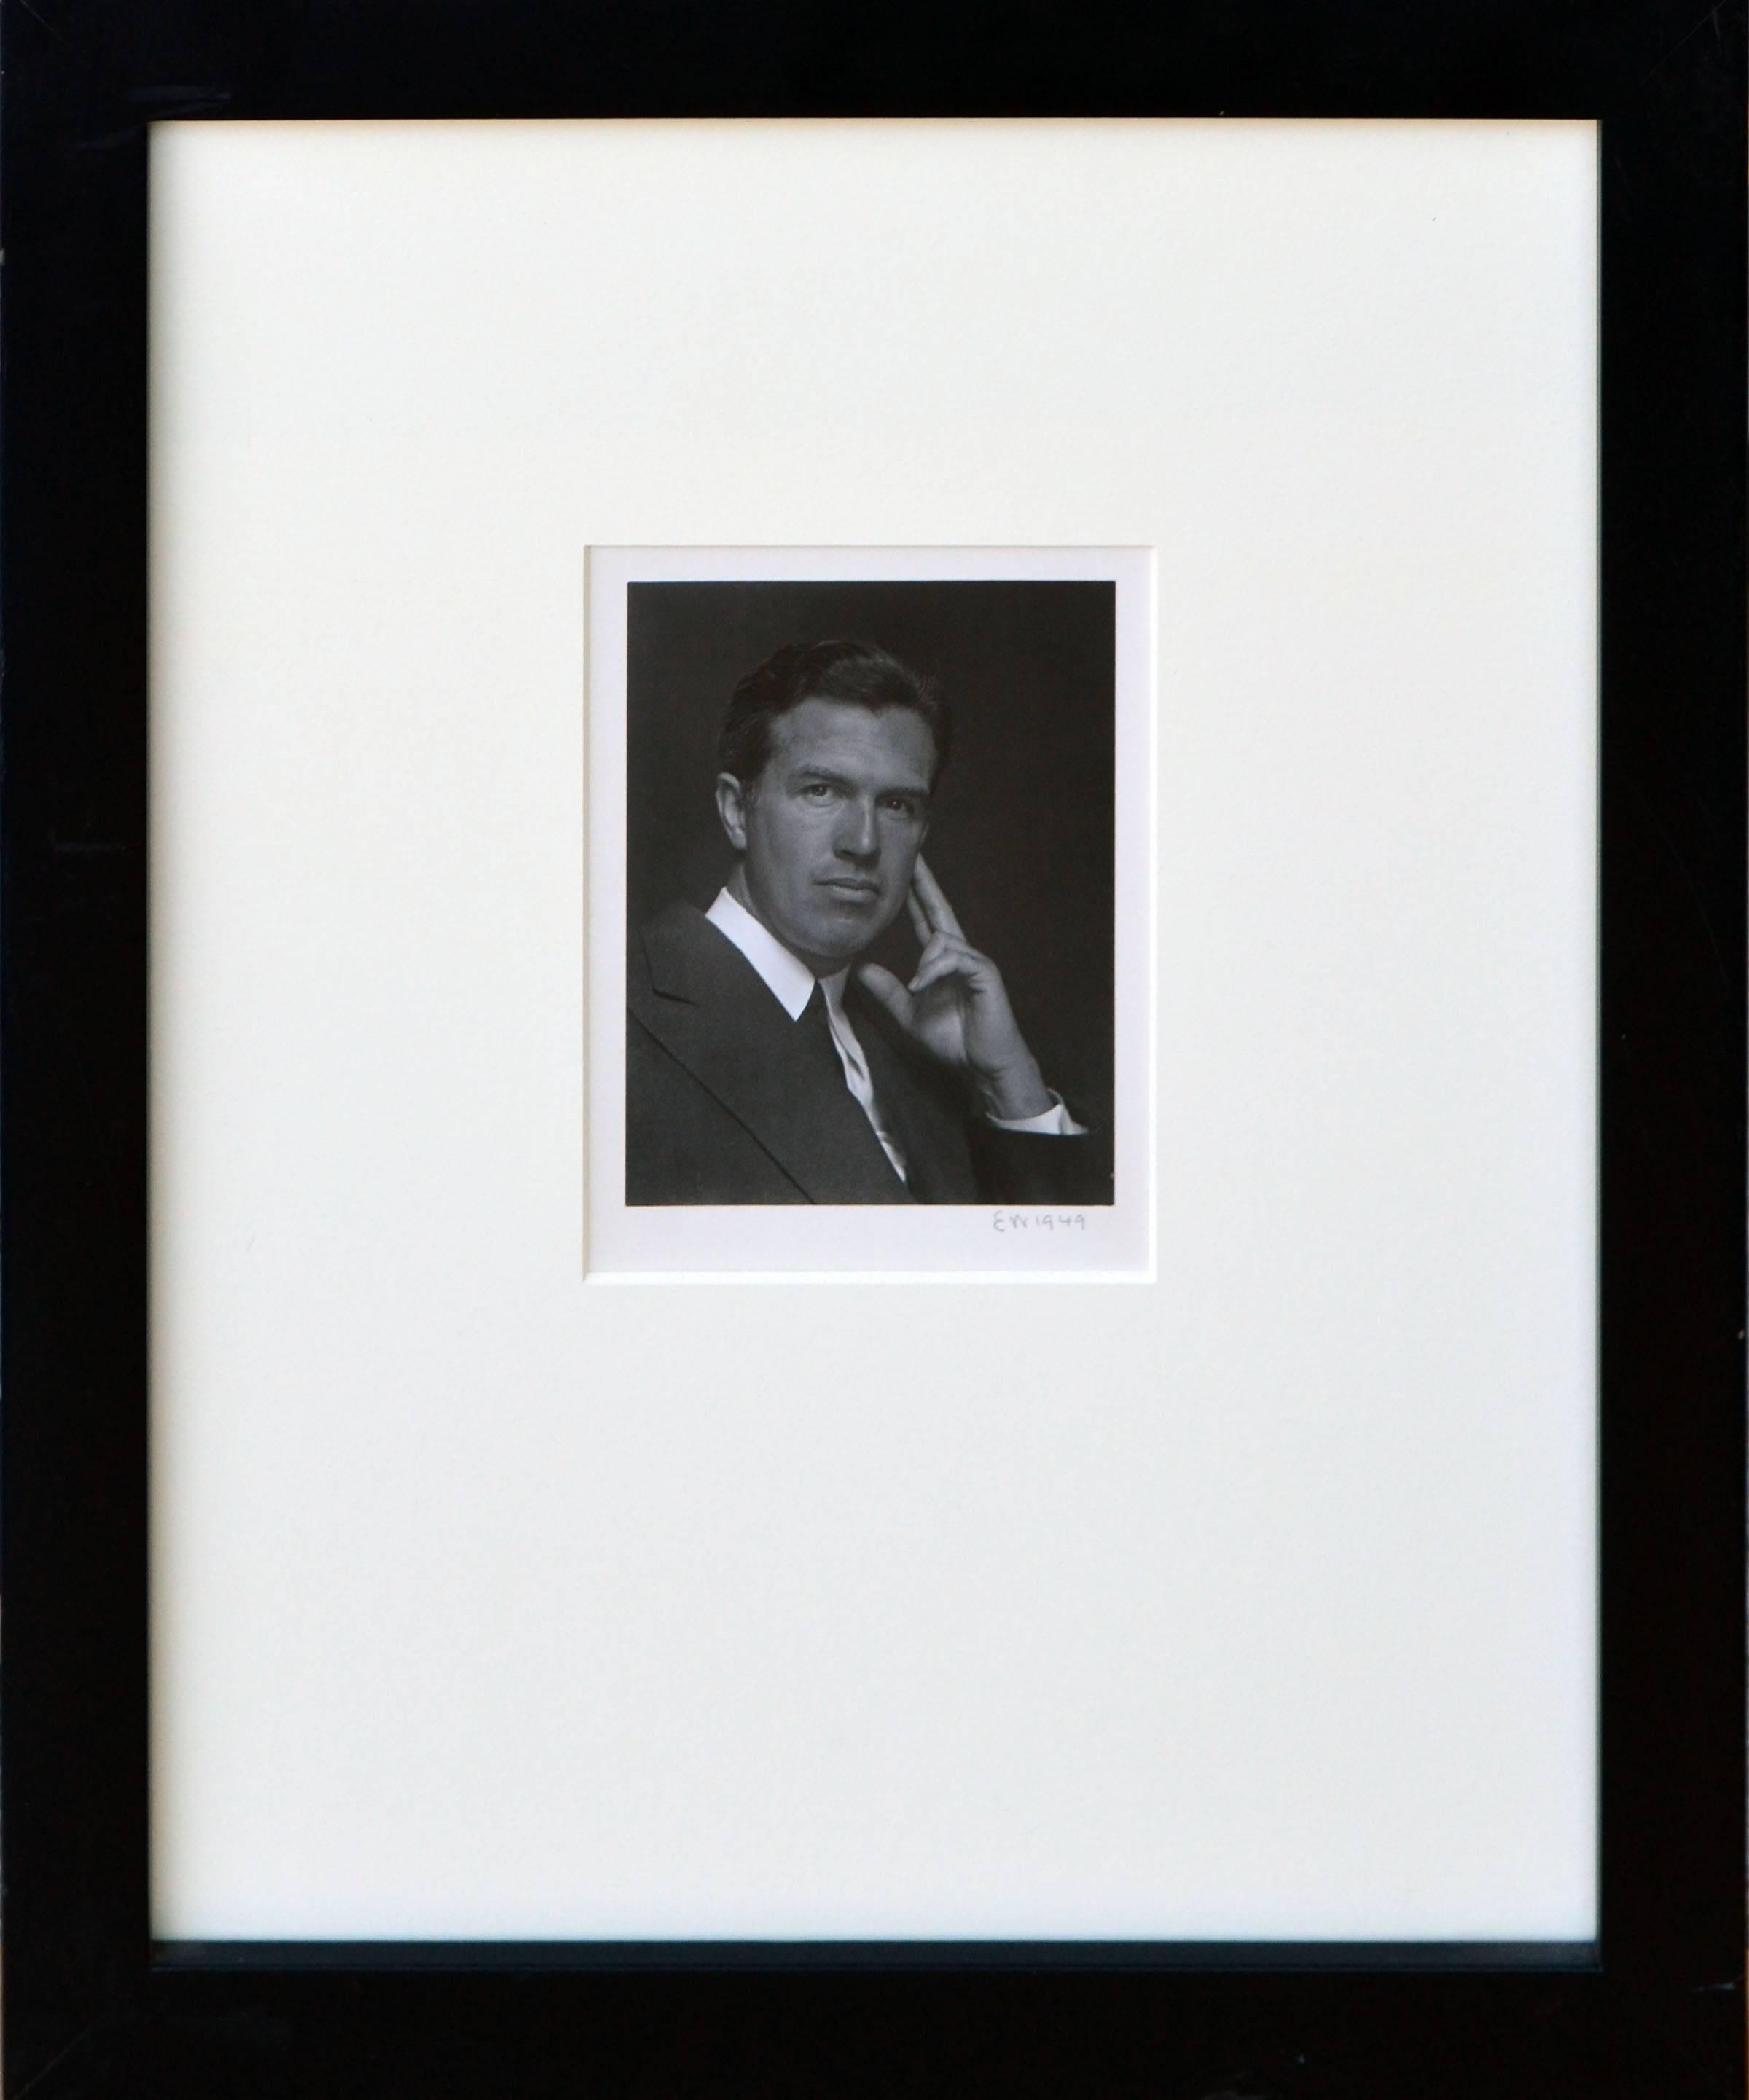 Seltene Schwarz-Weiß-Fotografie, das Porträt eines gut aussehenden Mannes von Edward Henry Weston (24. März 1886 - 1. Januar 1958). Signiert 